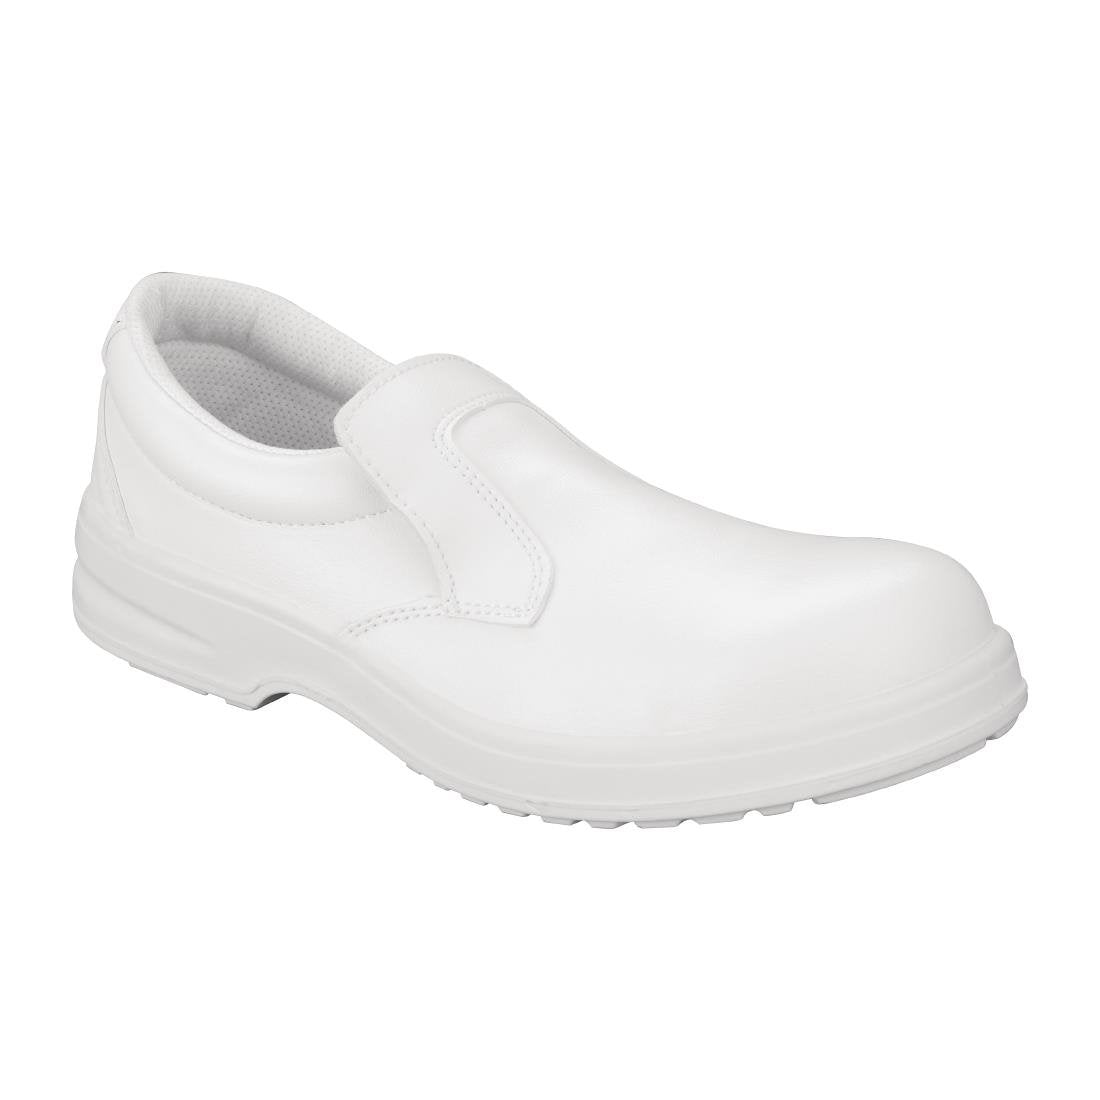 Slipbuster Footwear Slipbuster Lite Safety Slip On White - Size 39